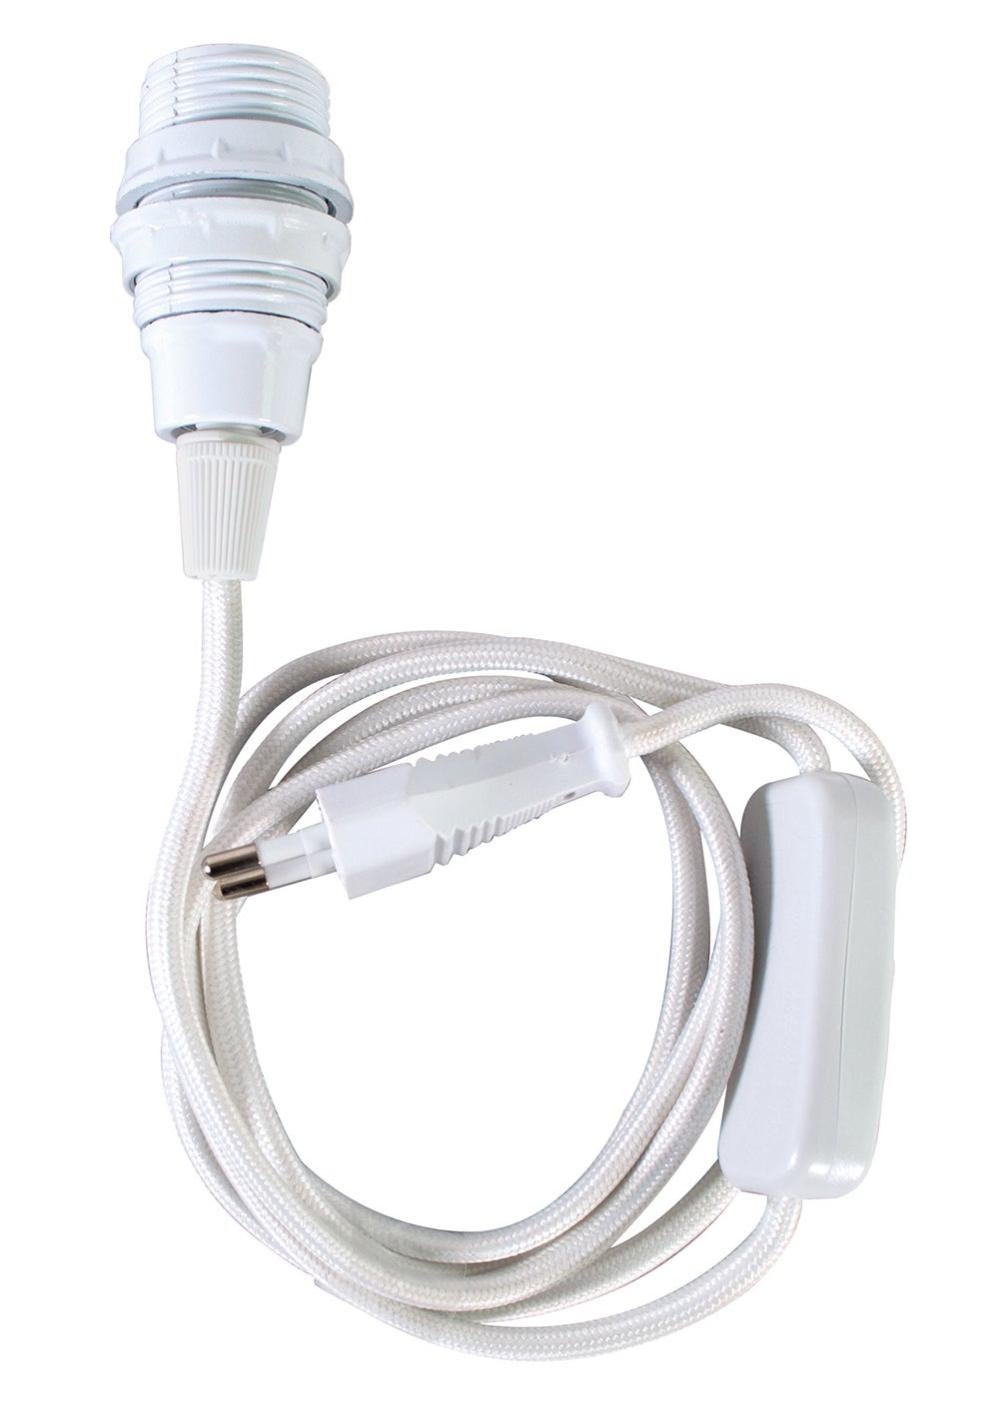 Câble électrique blanc avec Douille E14 et interrupteur, Cordon long. 2 m,  pour la réalisation d'une - Cercle abat jour - Creavea